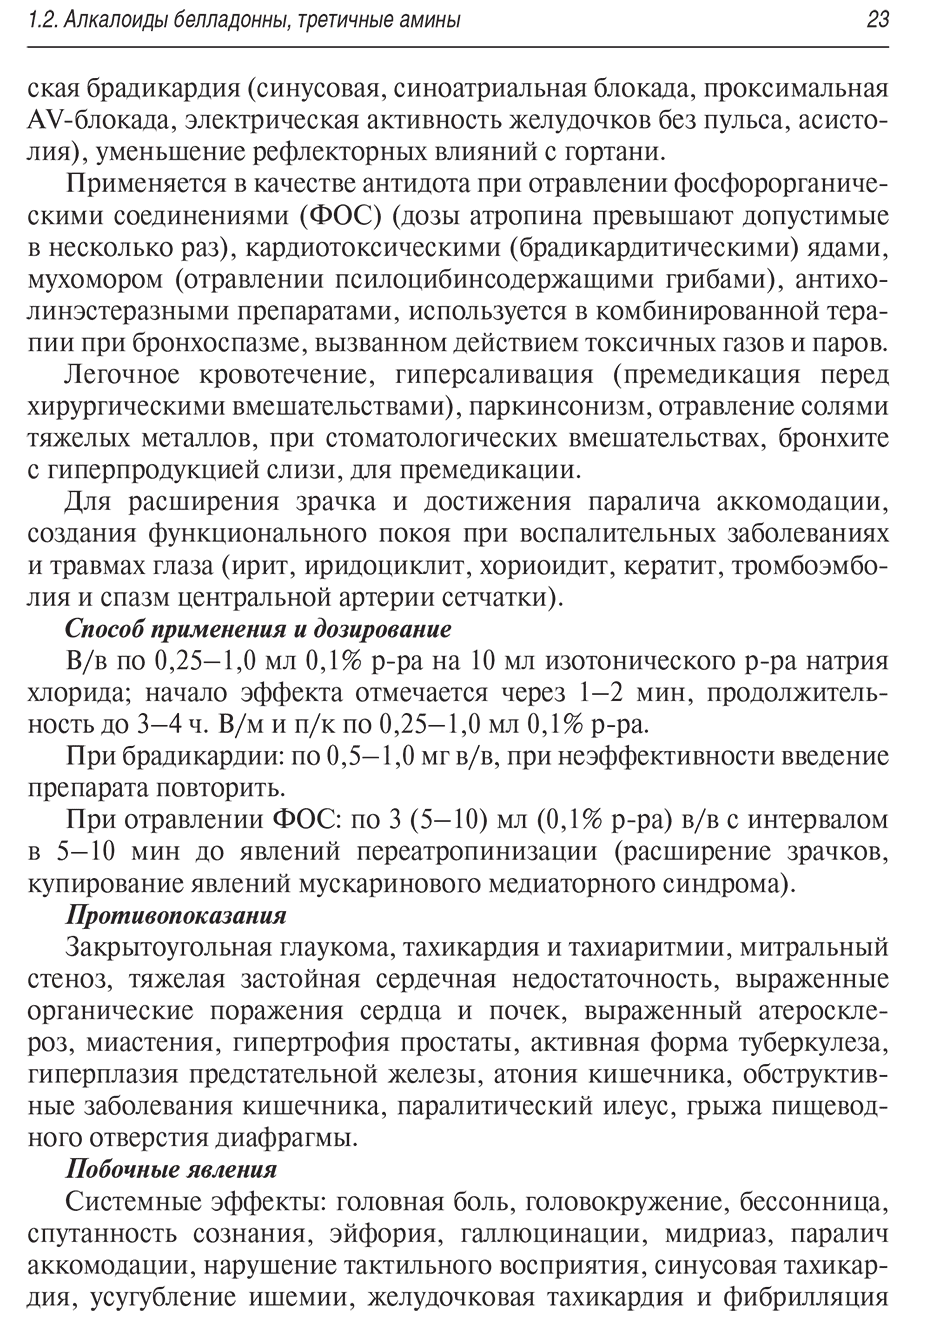 Пример страницы из книги "Лекарства при оказании скорой медицинской помощи: руководство для врачей и фельдшеров" - Тараканов А. В.